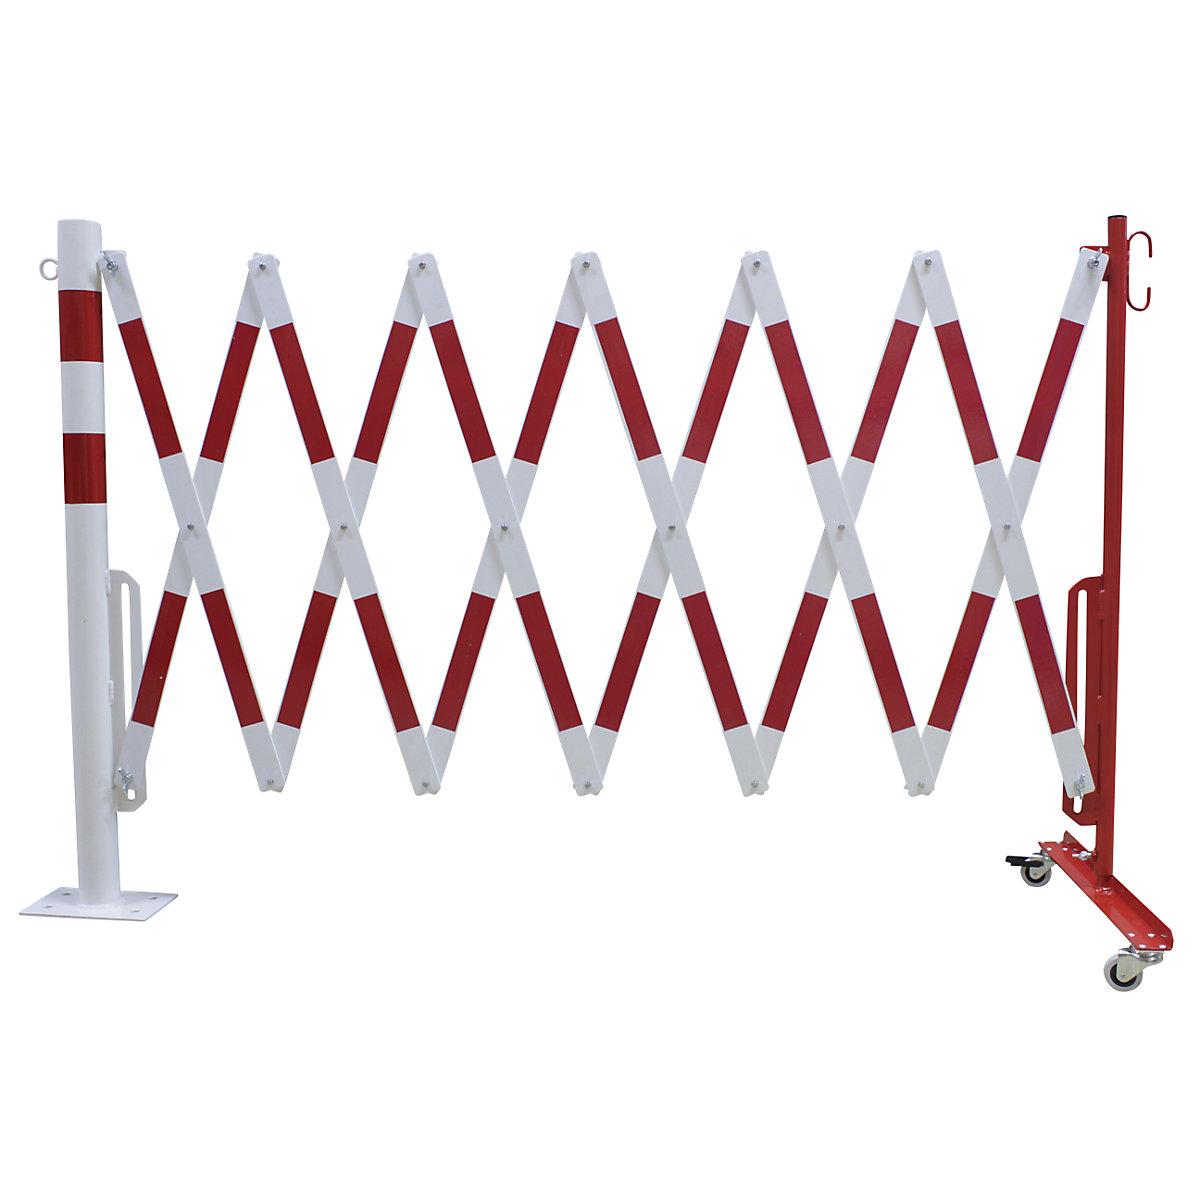 Afzetpaal met schaarhek, ronde buis Ø 60 mm, voor bouwbevestiging, reflecterend, rood/wit, lengte max. 4000 mm-4